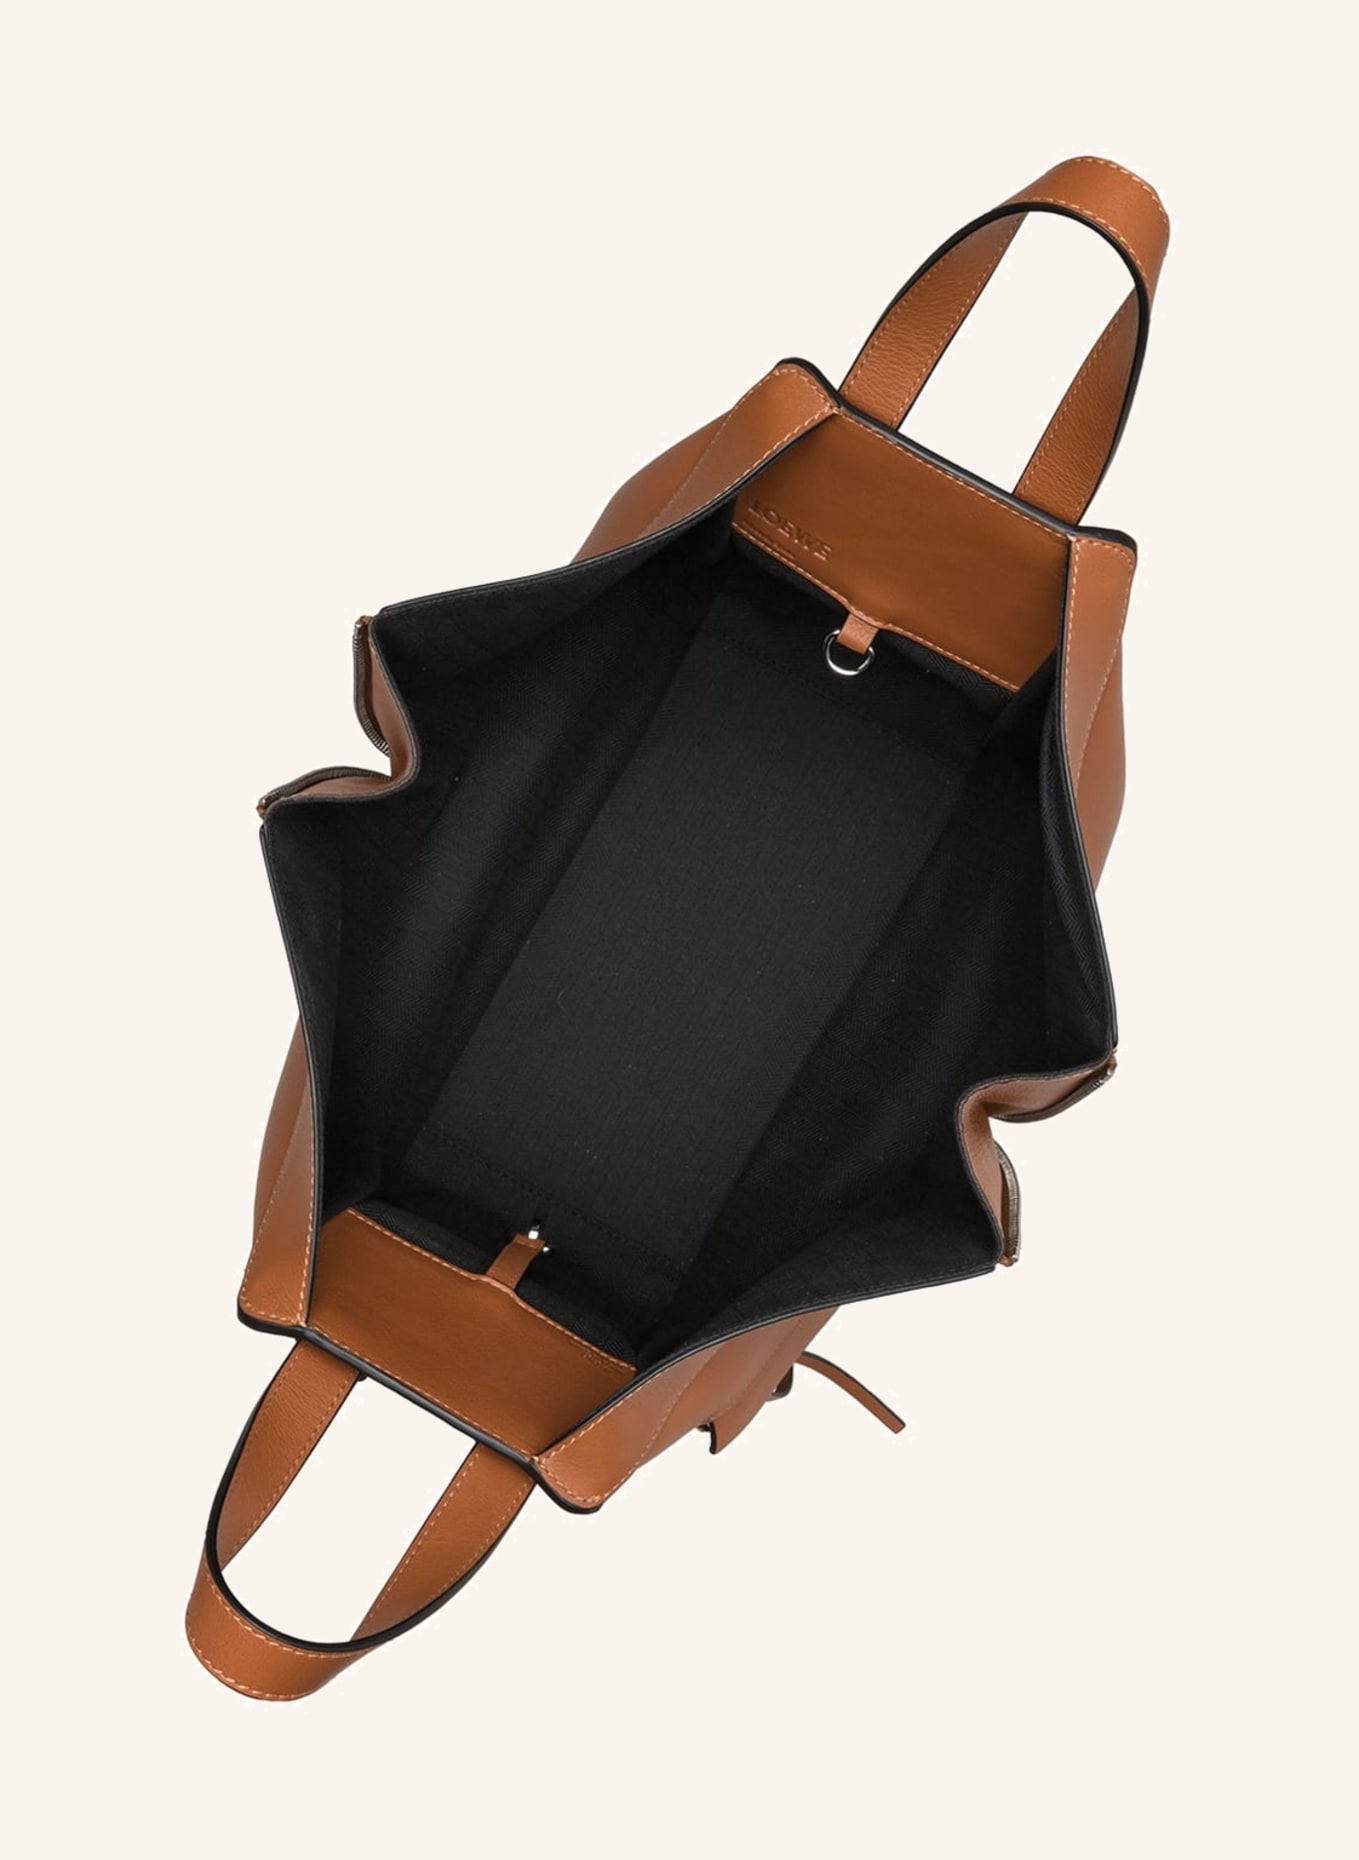 LOEWE Handtasche HAMMOCK SMALL, Farbe: COGNAC (Bild 3)